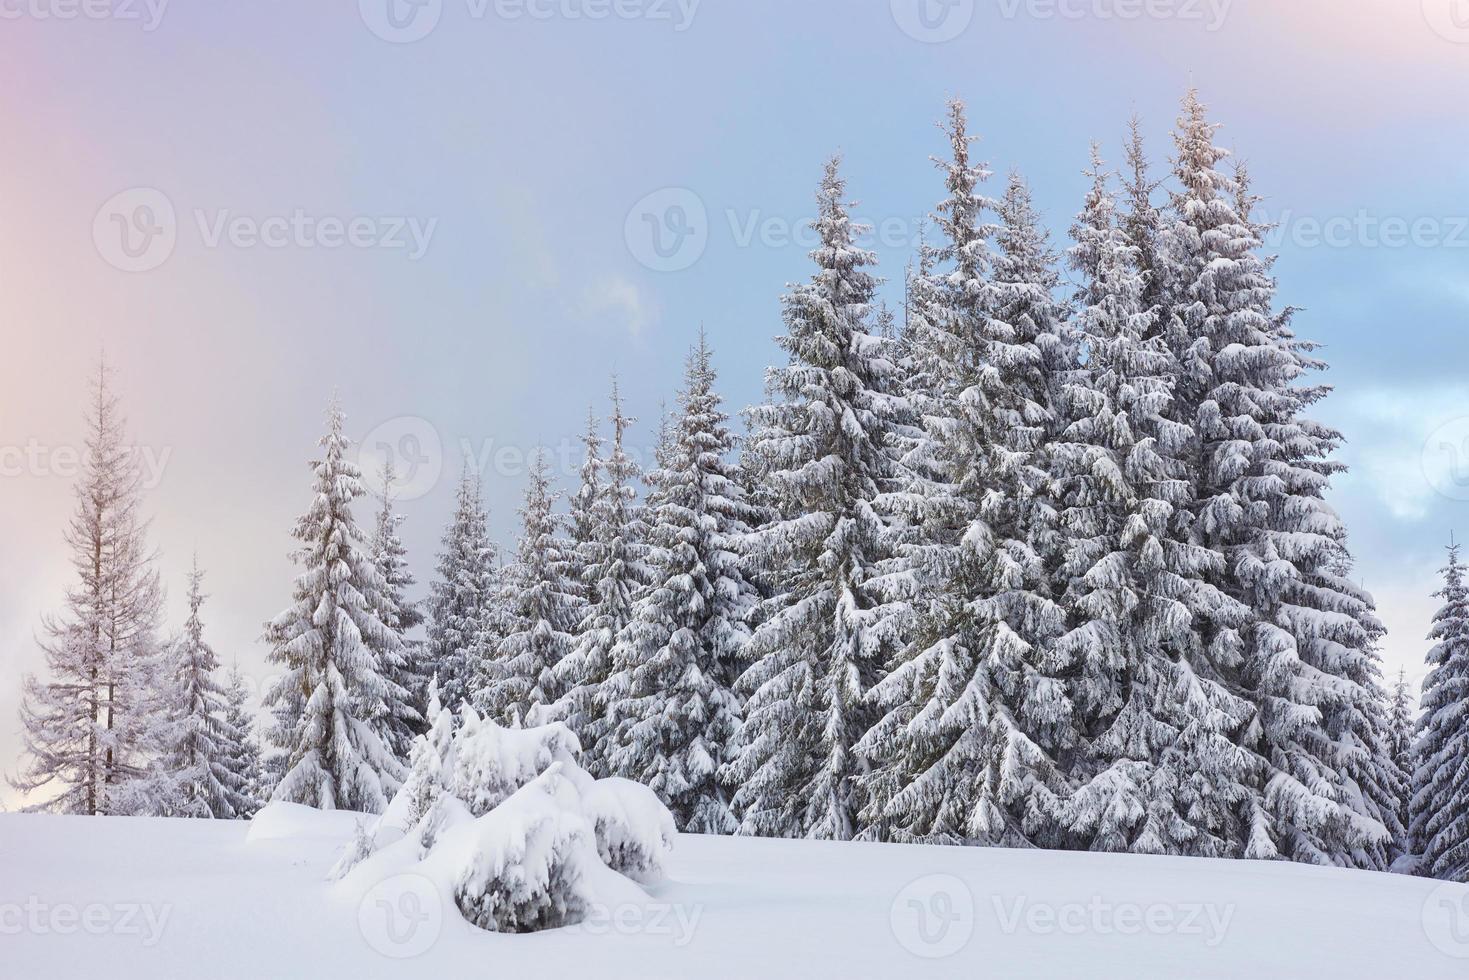 maestosi abeti bianchi che brillano alla luce del sole. scena invernale pittoresca e splendida. posizione luogo parco nazionale dei Carpazi, ucraina, europa. stazione sciistica delle alpi foto